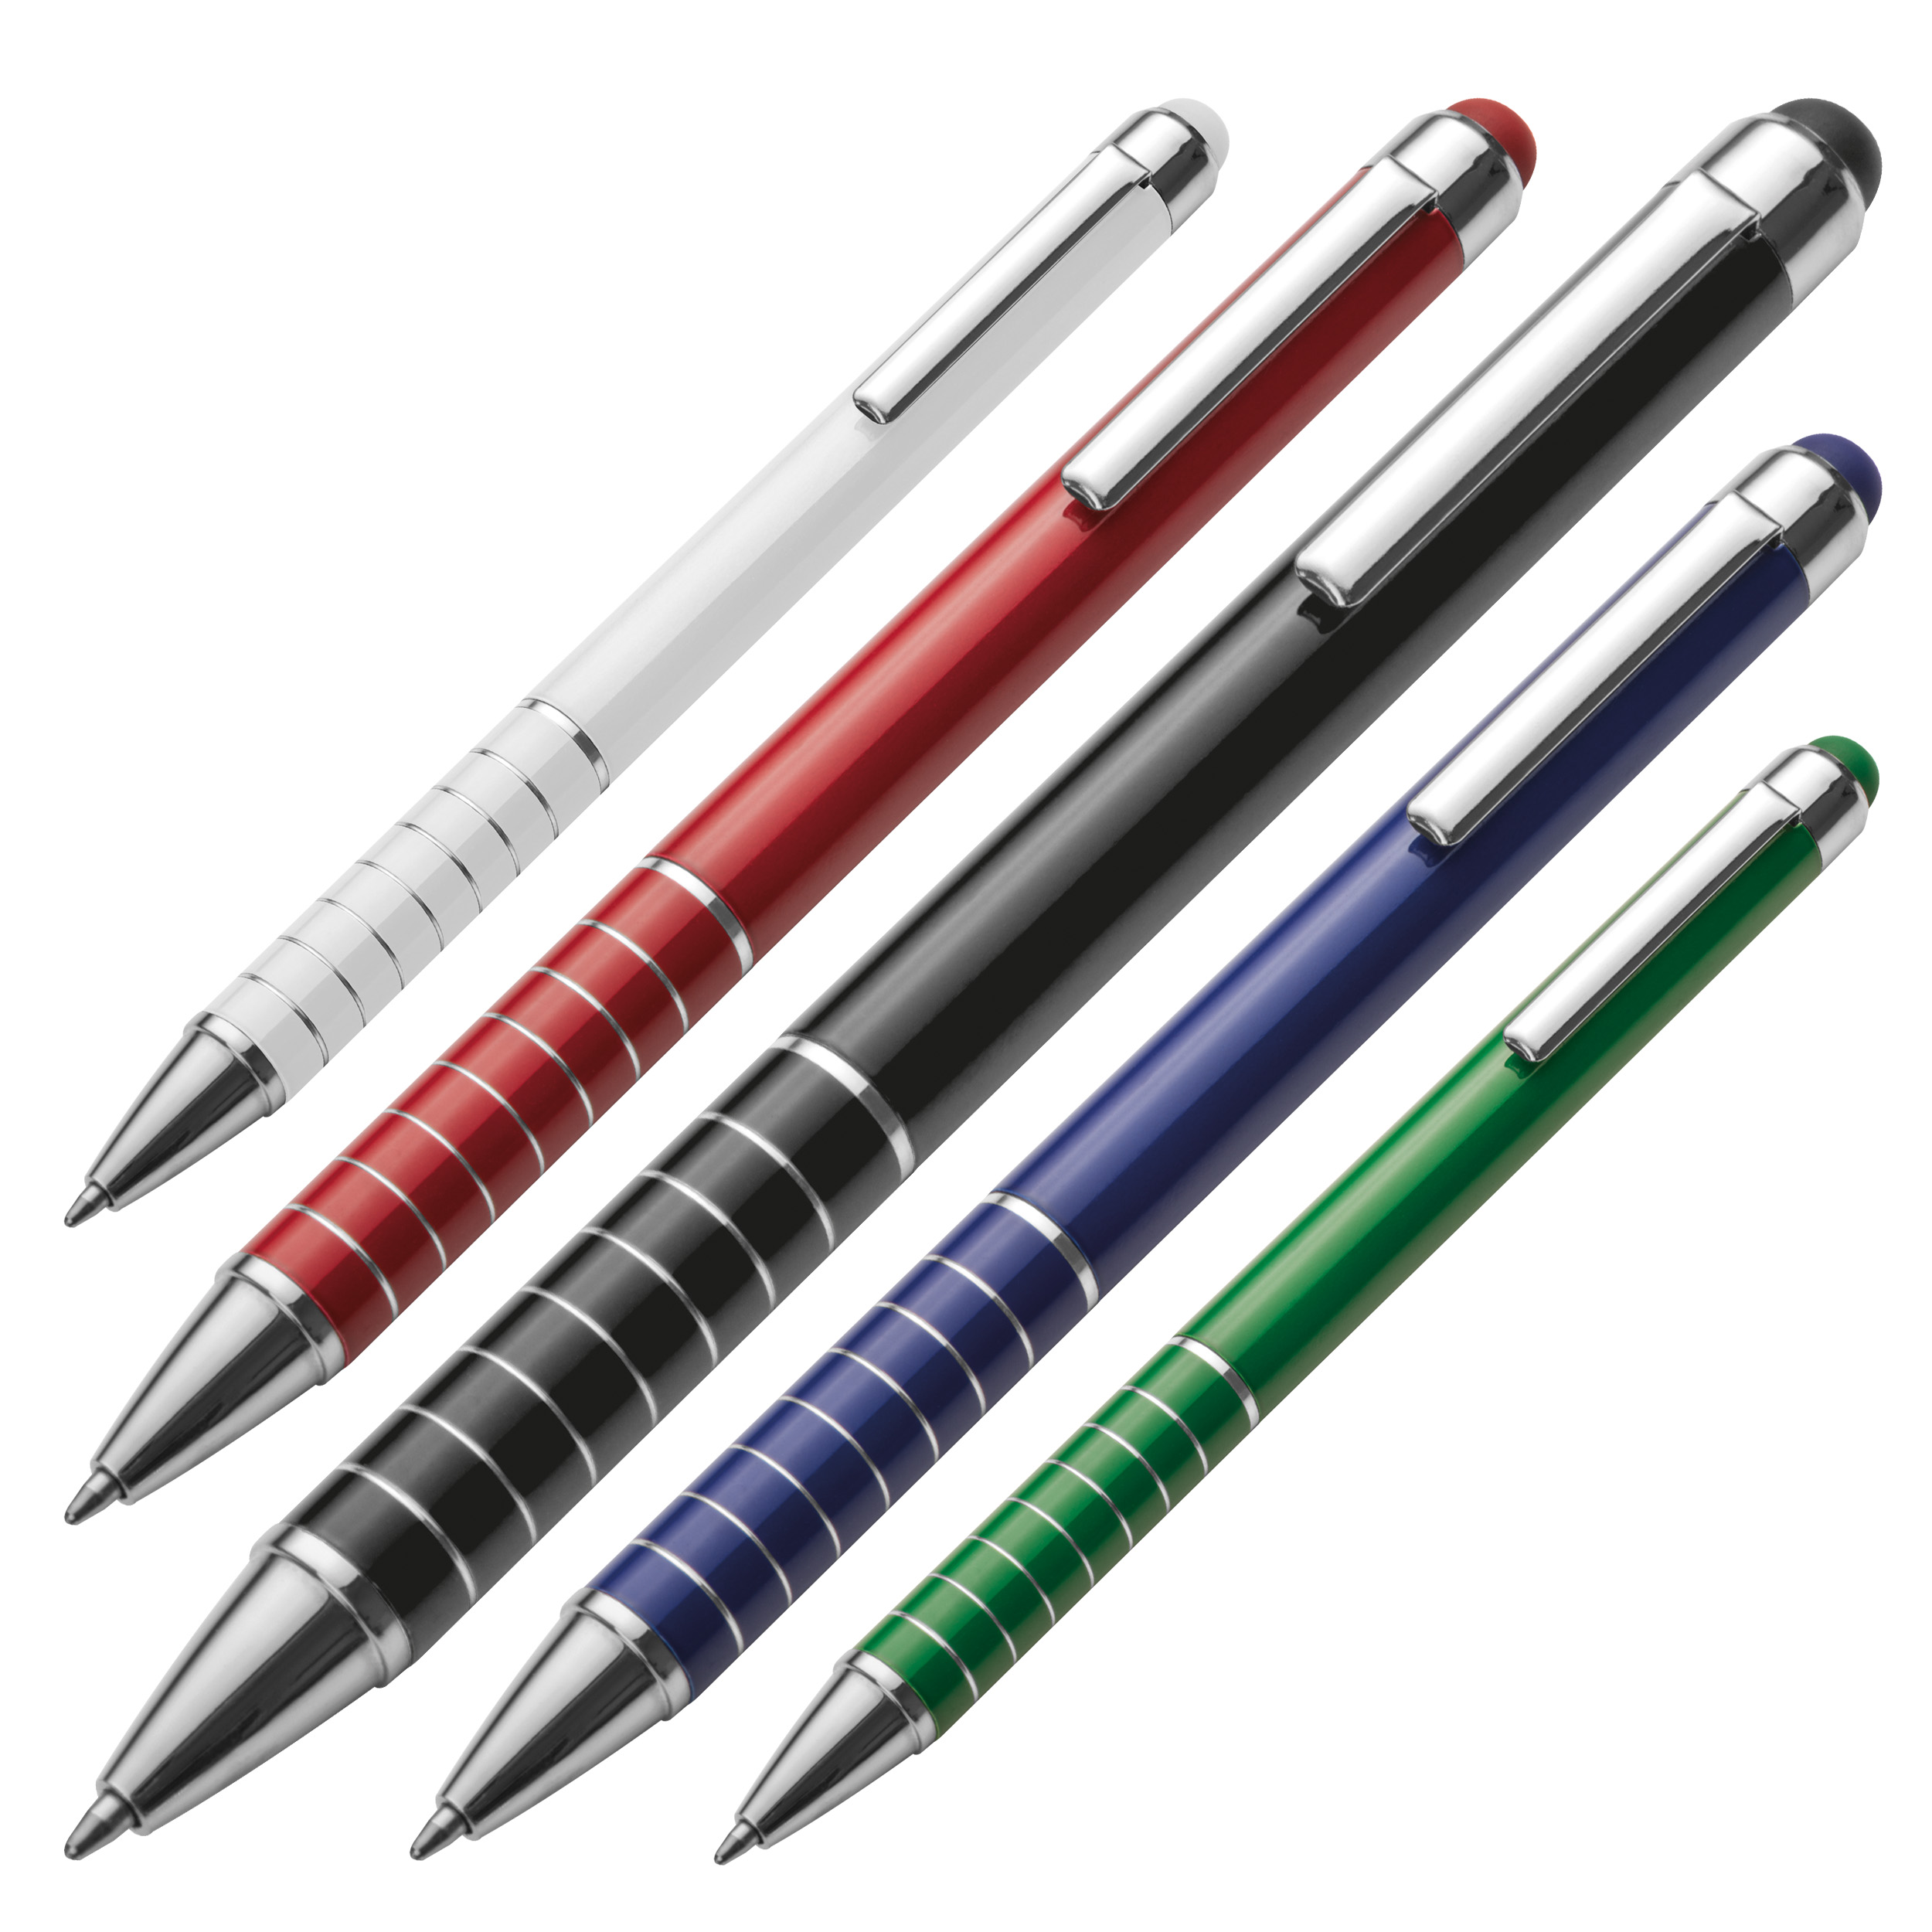 Kugelschreiber aus Metall mit Touchfunktion